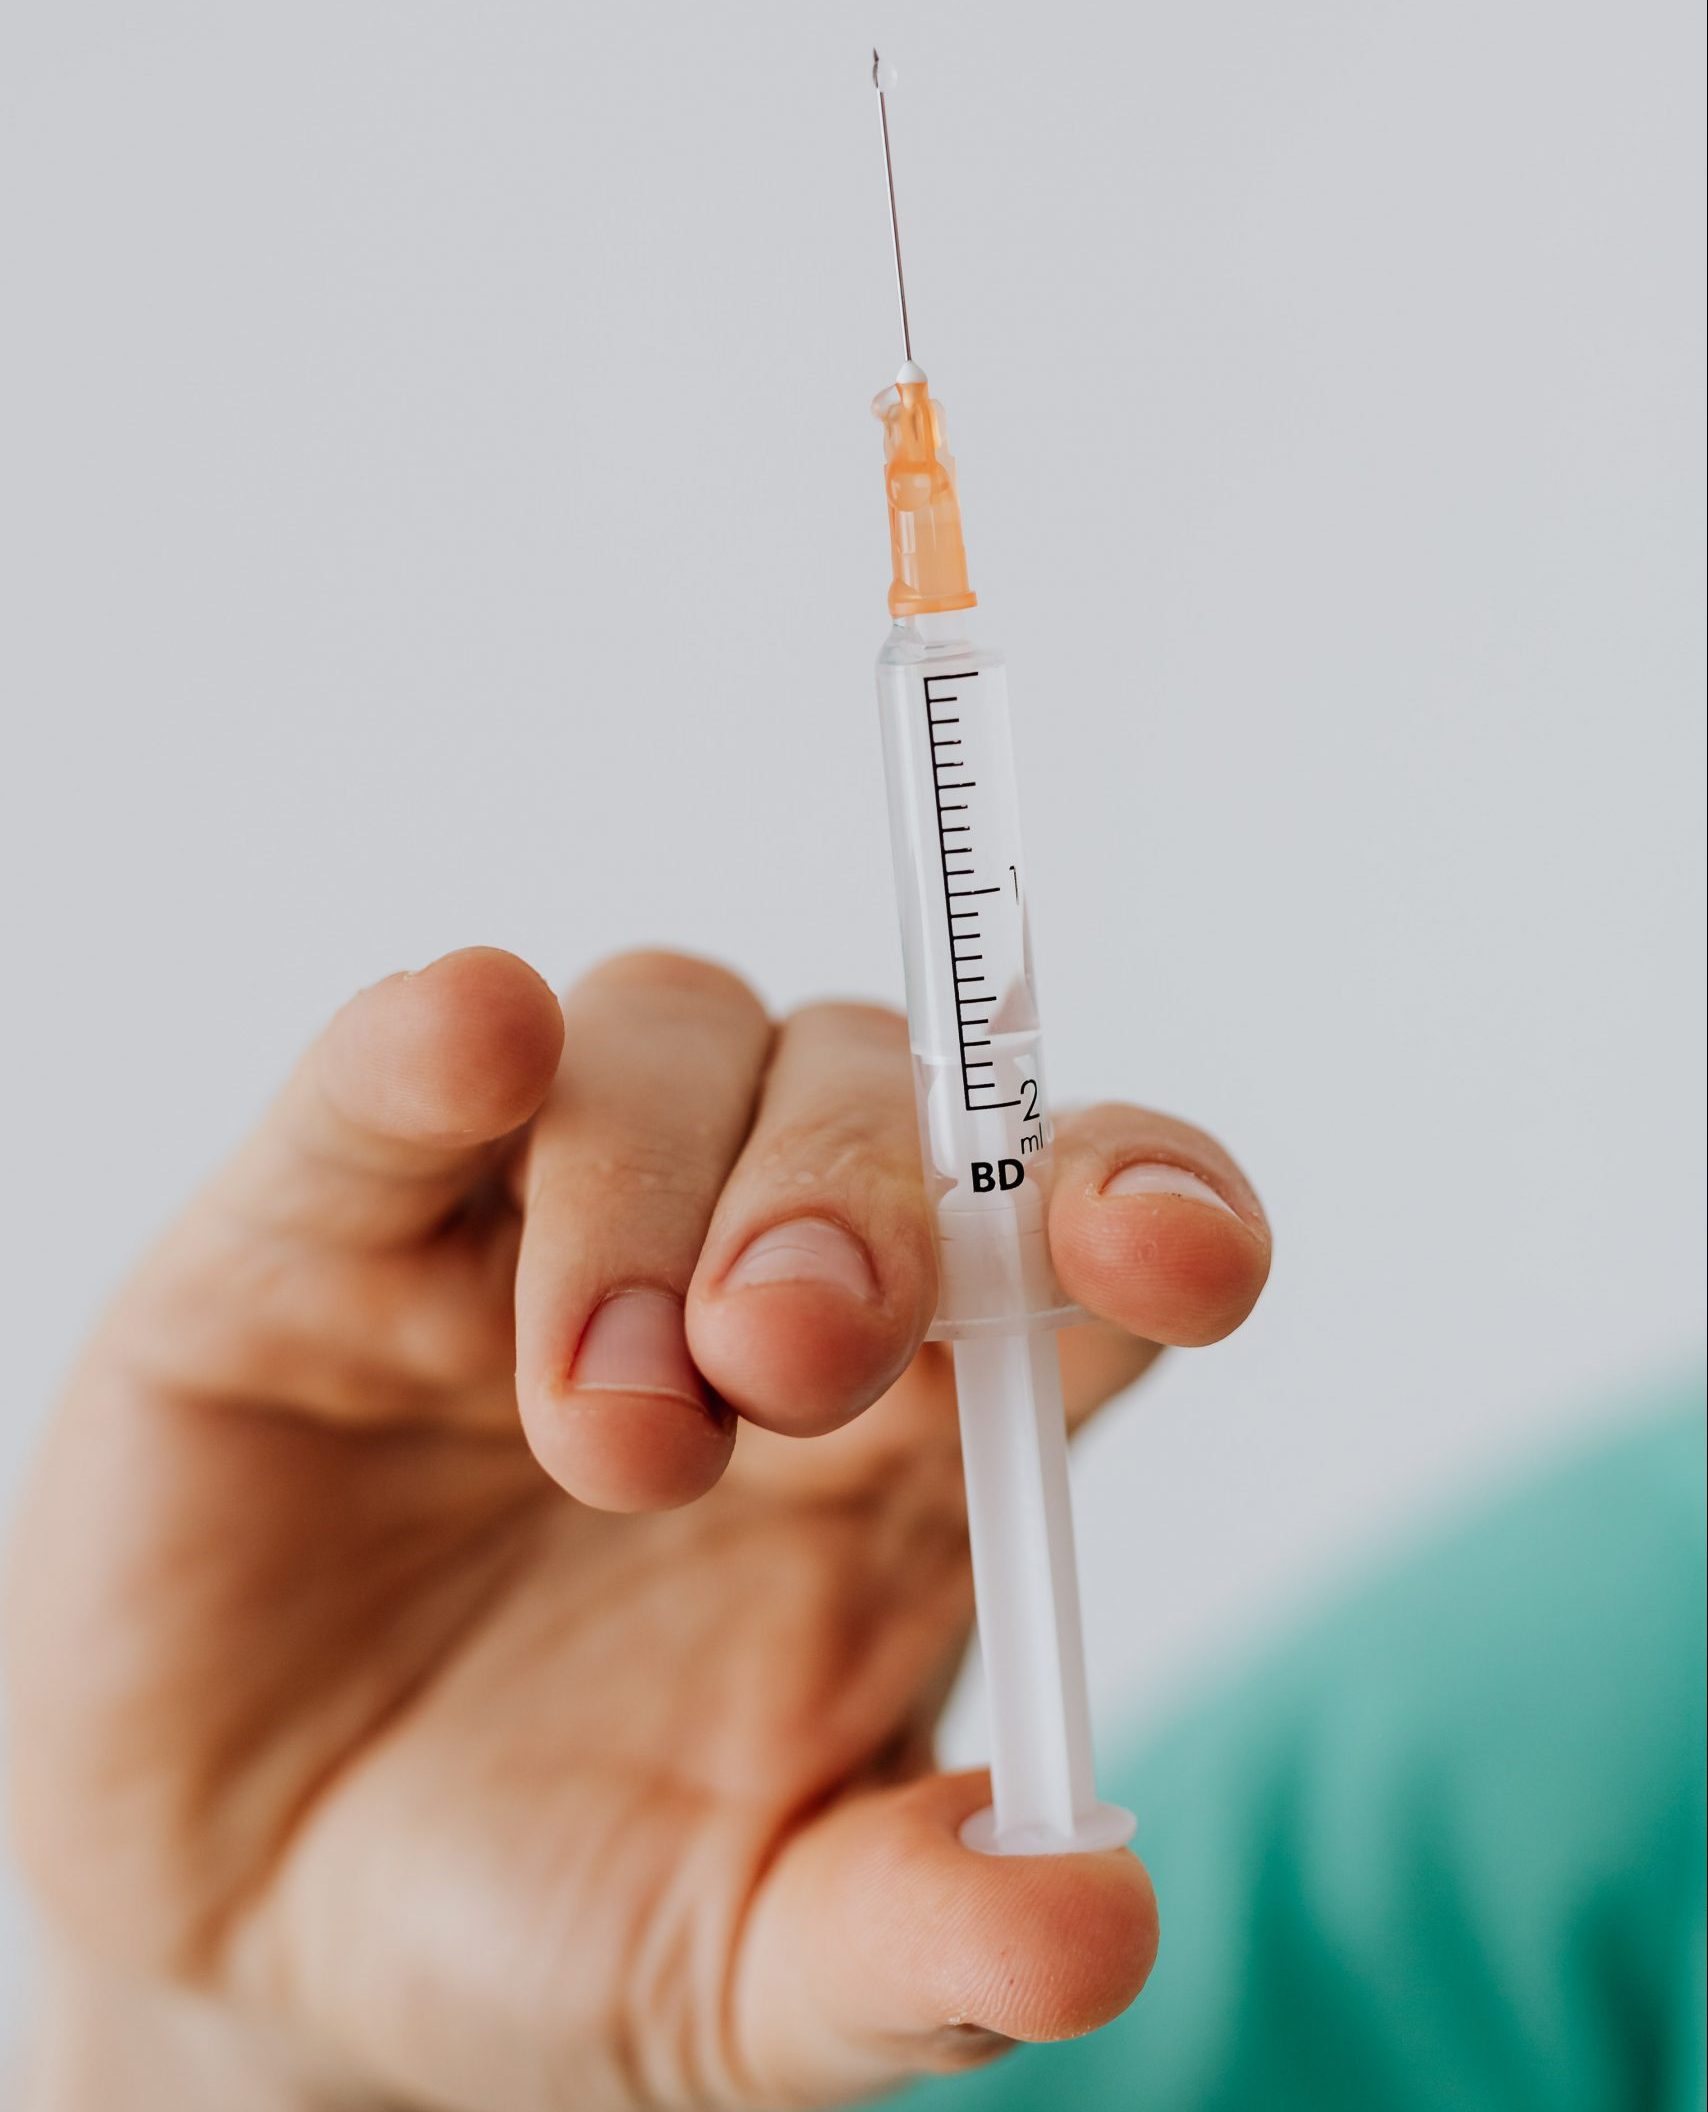 Japão vê alta taxa de anafilaxia após tomar a vacina Pfizer